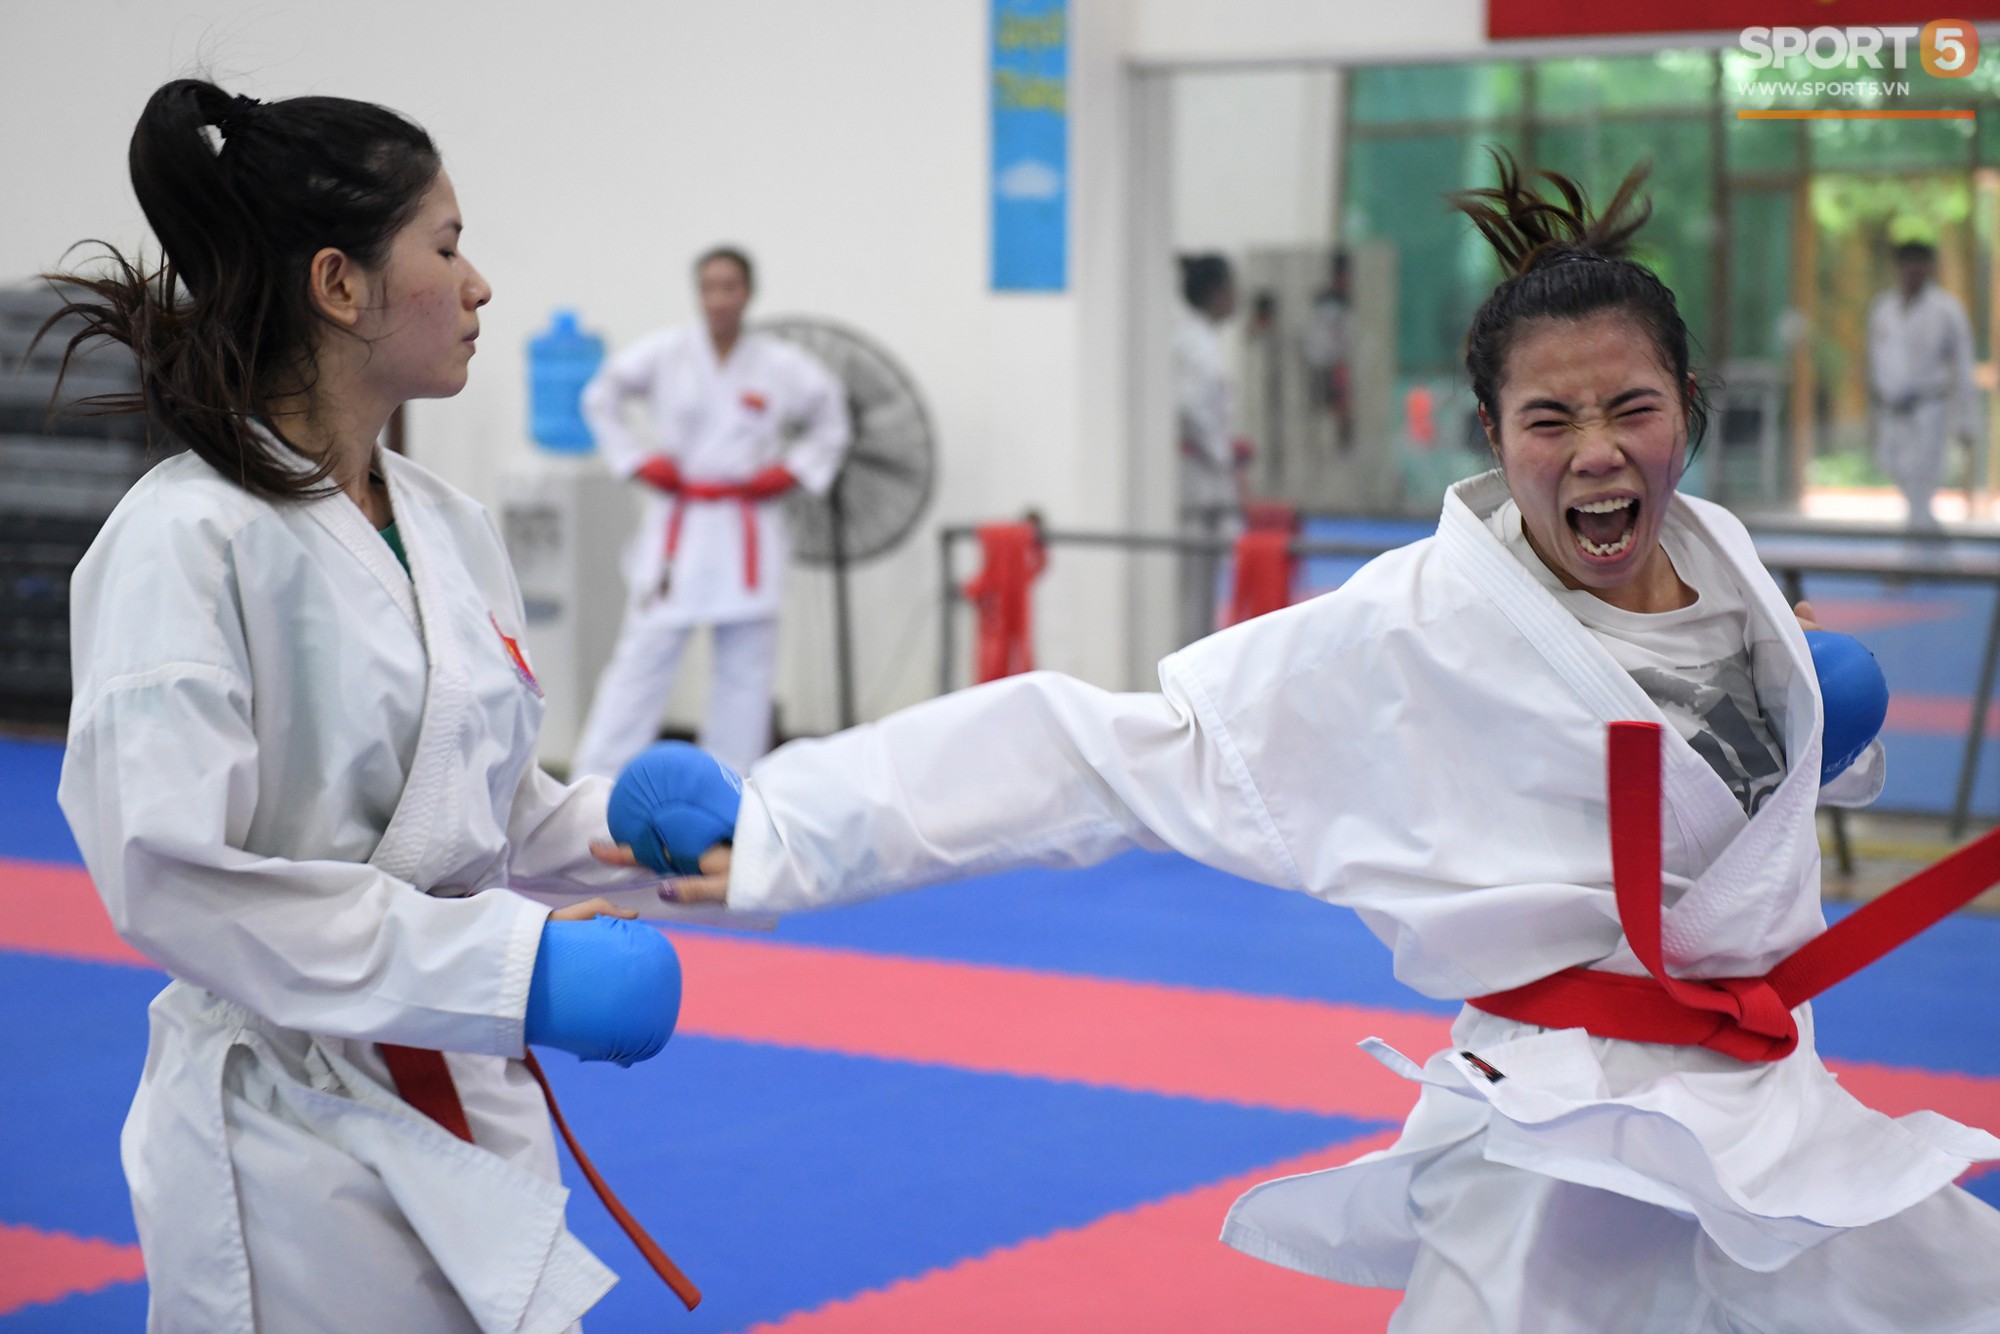 Các nữ võ sĩ Karate Việt Nam miệt mài tập luyện, sẵn sàng tranh tài tại Asiad 2018 - Ảnh 8.